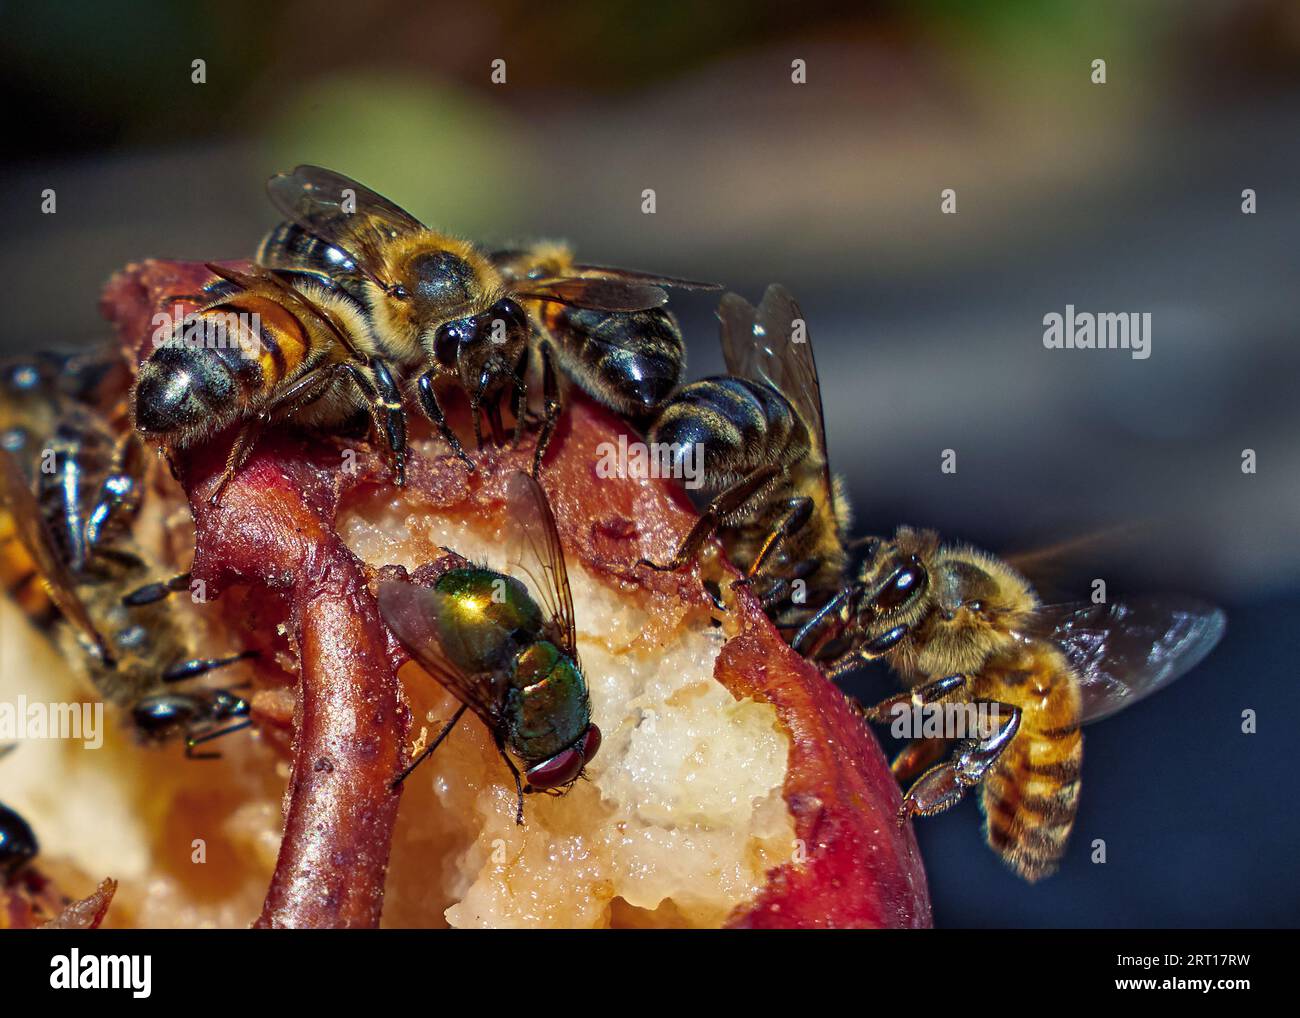 Les abeilles et les mouches mangent une poire mûre pourrie. Gros plan, nature, arrière-plan flou Banque D'Images